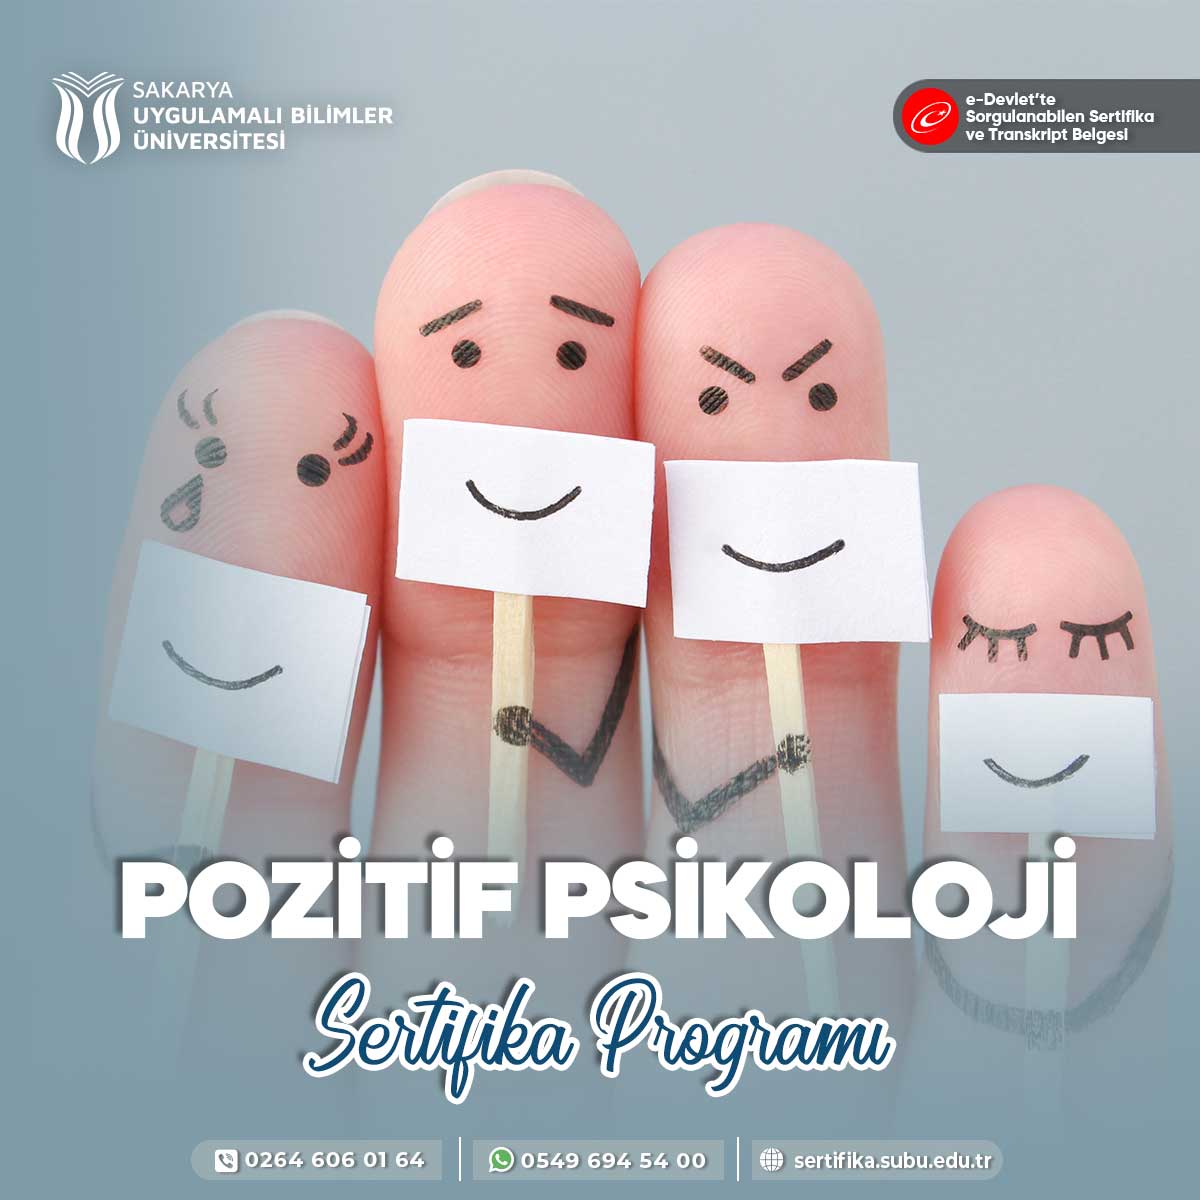 Pozitif Psikoloji Sertifika Programı